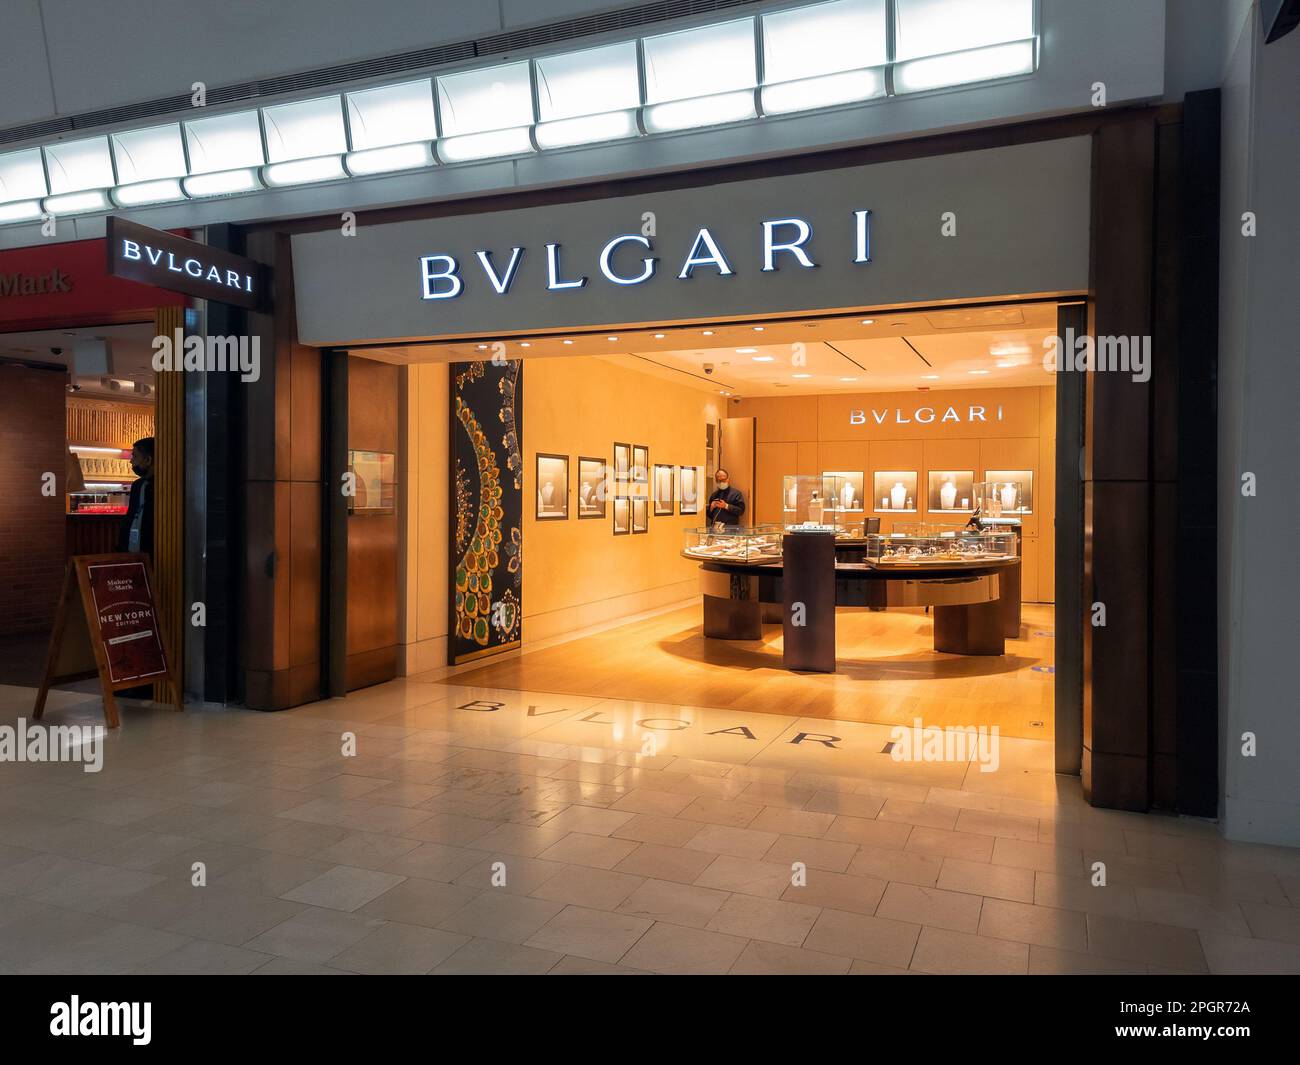 Queens, New York - 6 février 2023 : vue panoramique du magasin Bvlgari à l'intérieur de l'aéroport JFK. Banque D'Images